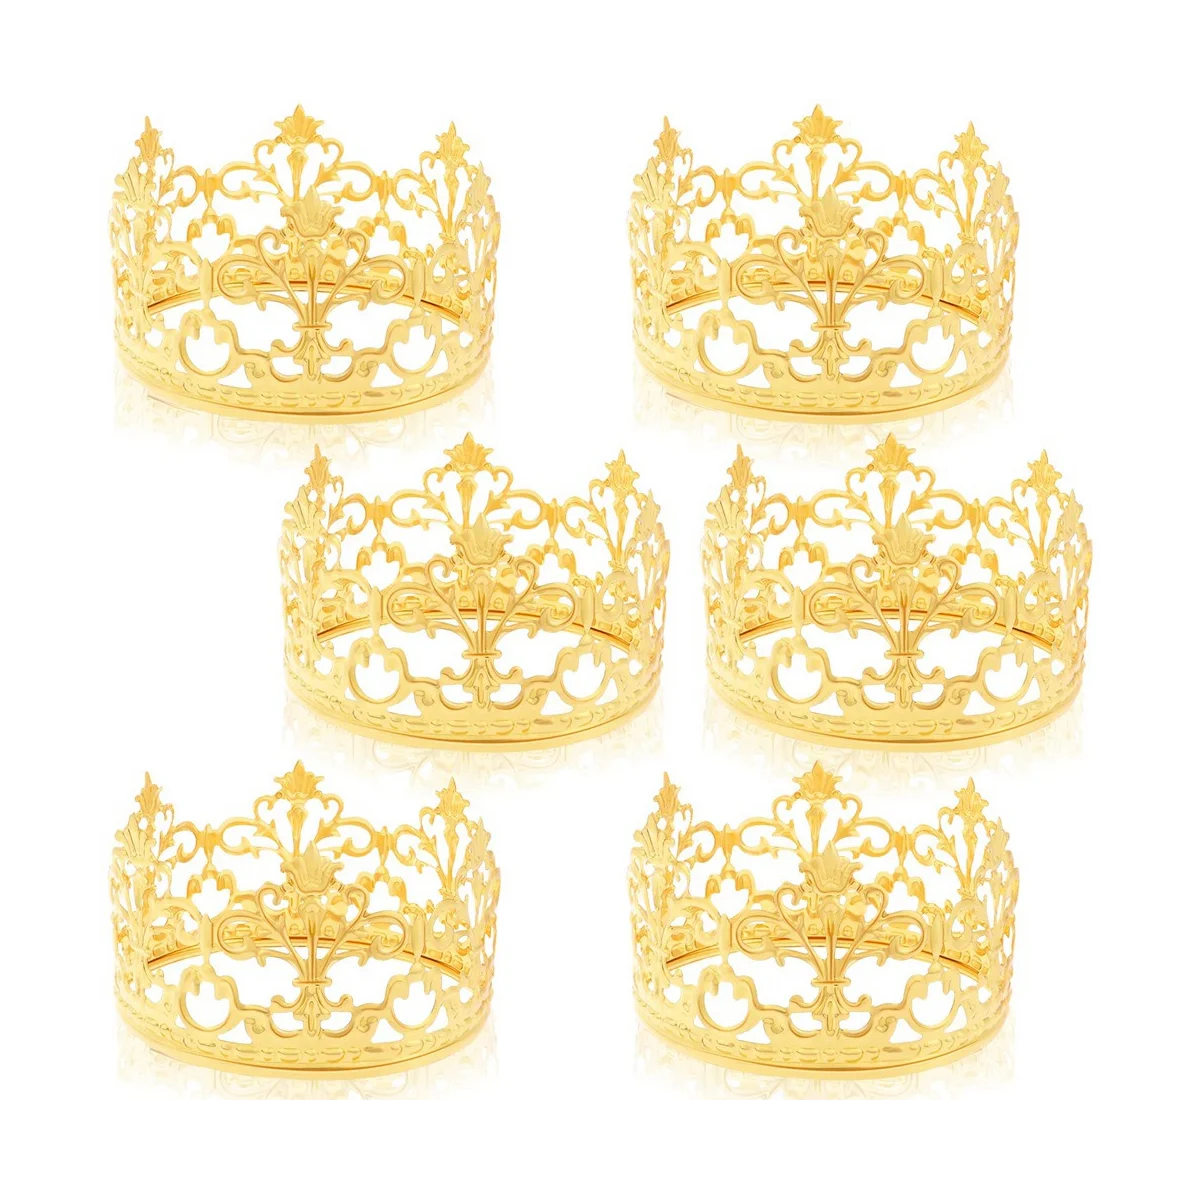 

6 шт., золотые искусственные топперы для торта, принцесса, маленькие топперы для кексов, корона, свадебный торт на день рождения, маленькая корона